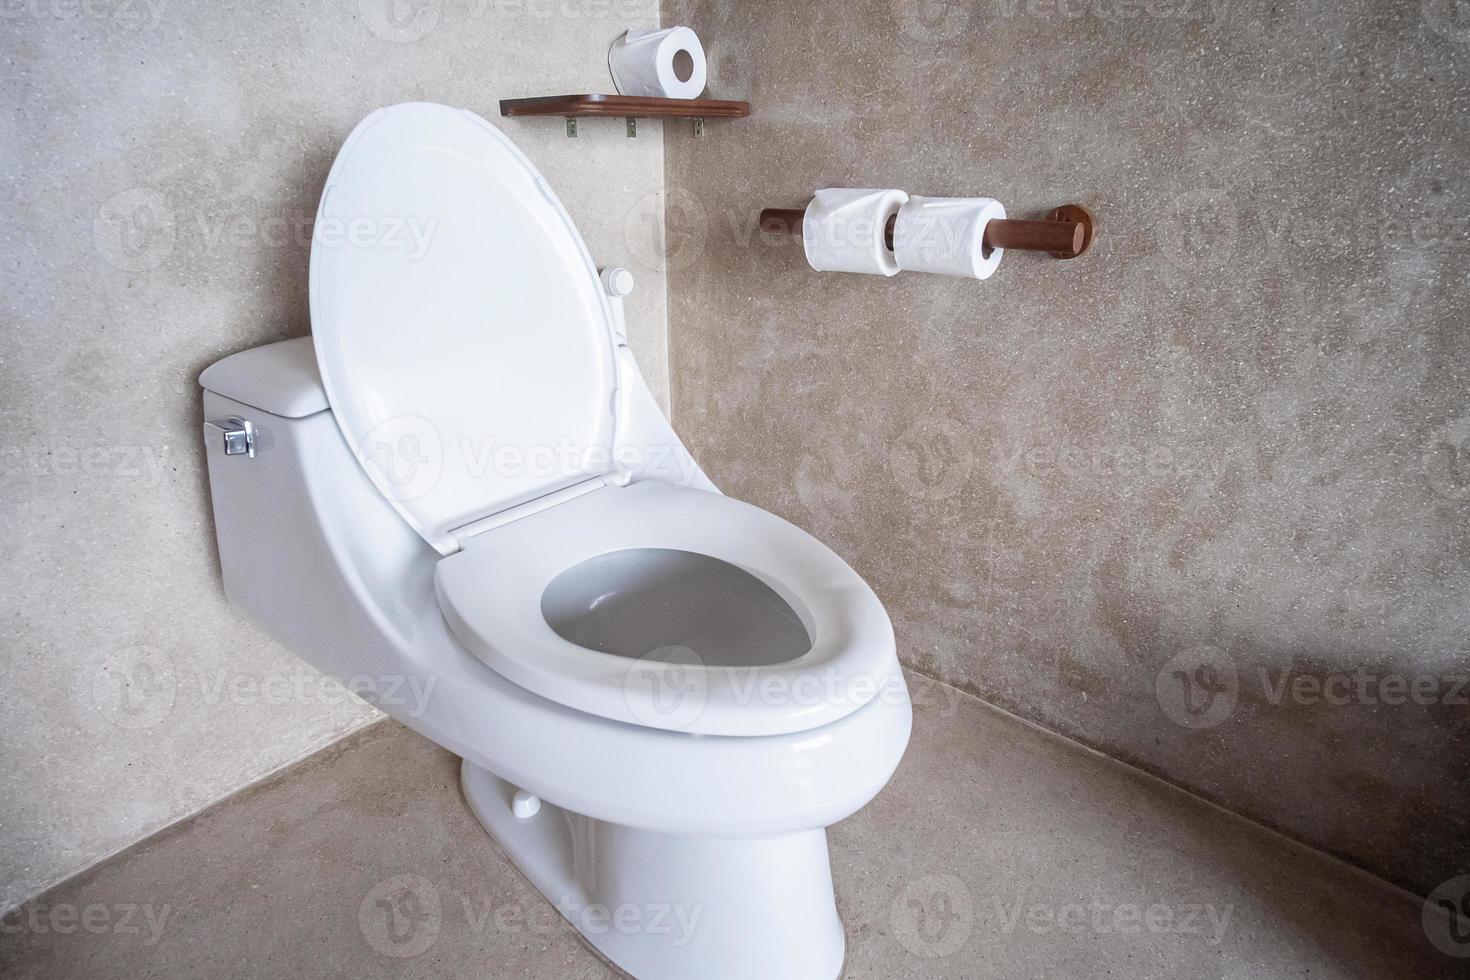 nieuwe keramische toiletpot en toiletpapier. schoonmaak, wc, lifestyle en persoonlijke hygiëne concept foto